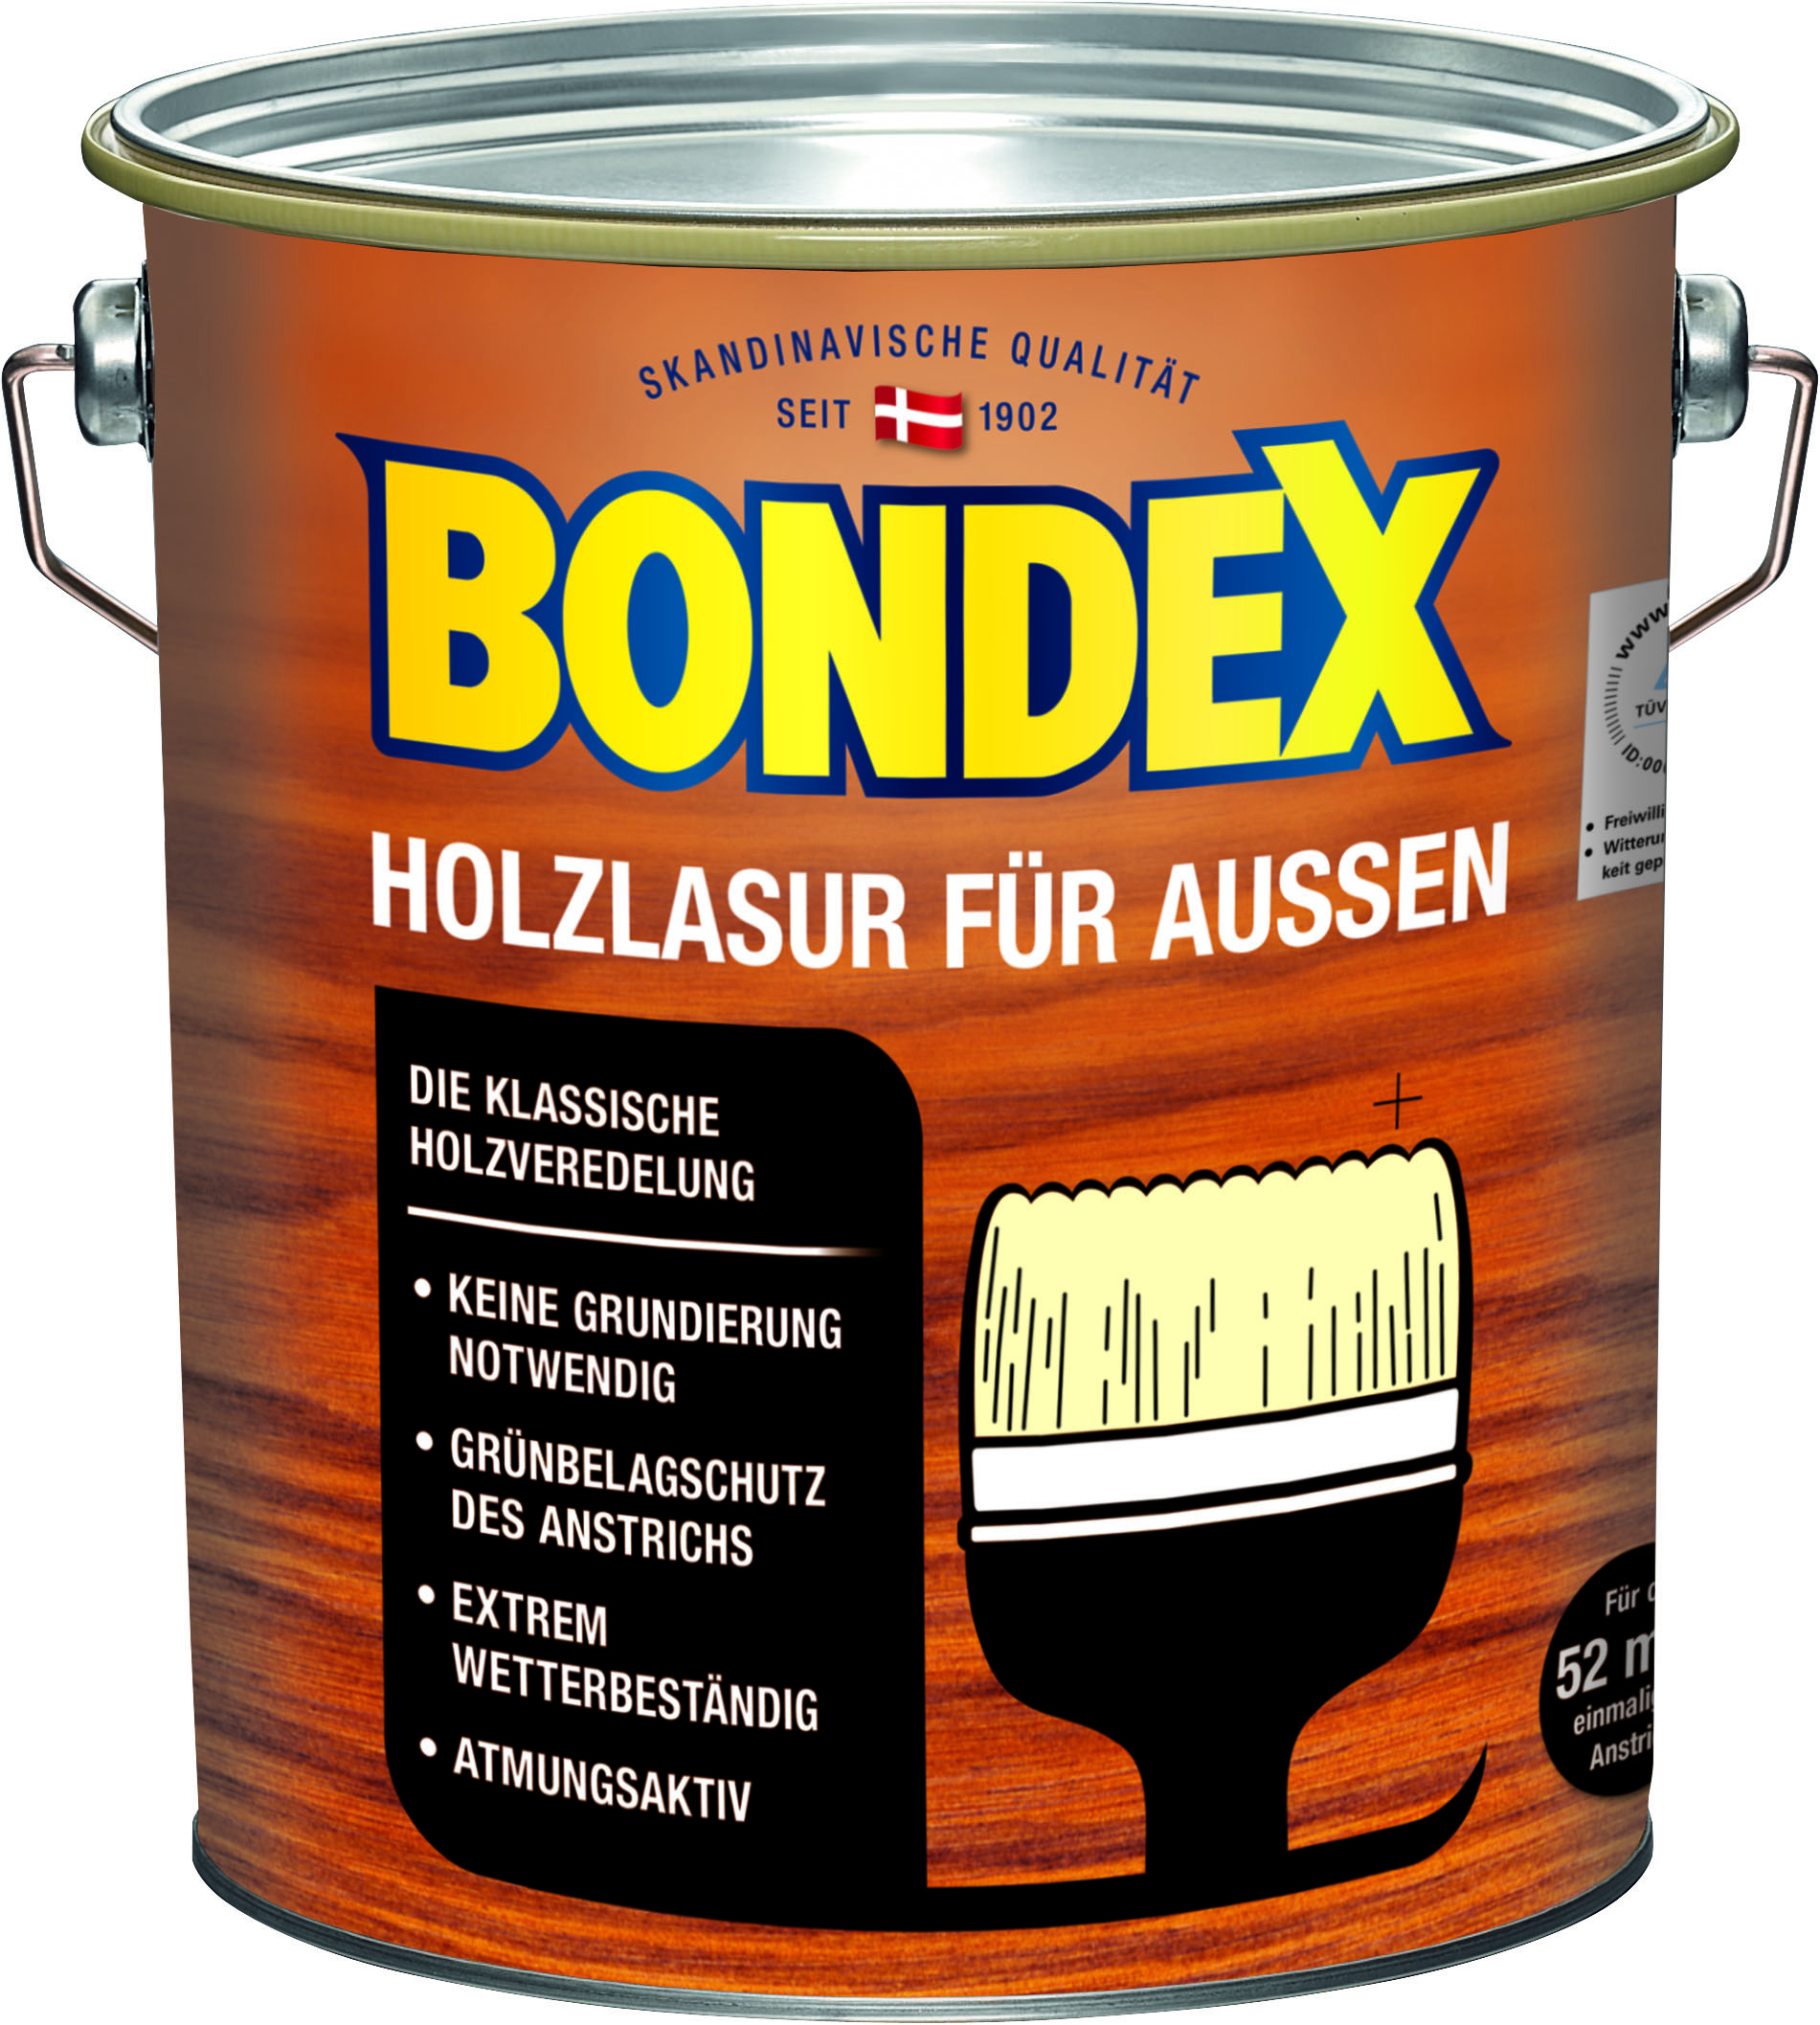 Bondex Holzlasur für Außen Hellgrau, 4L